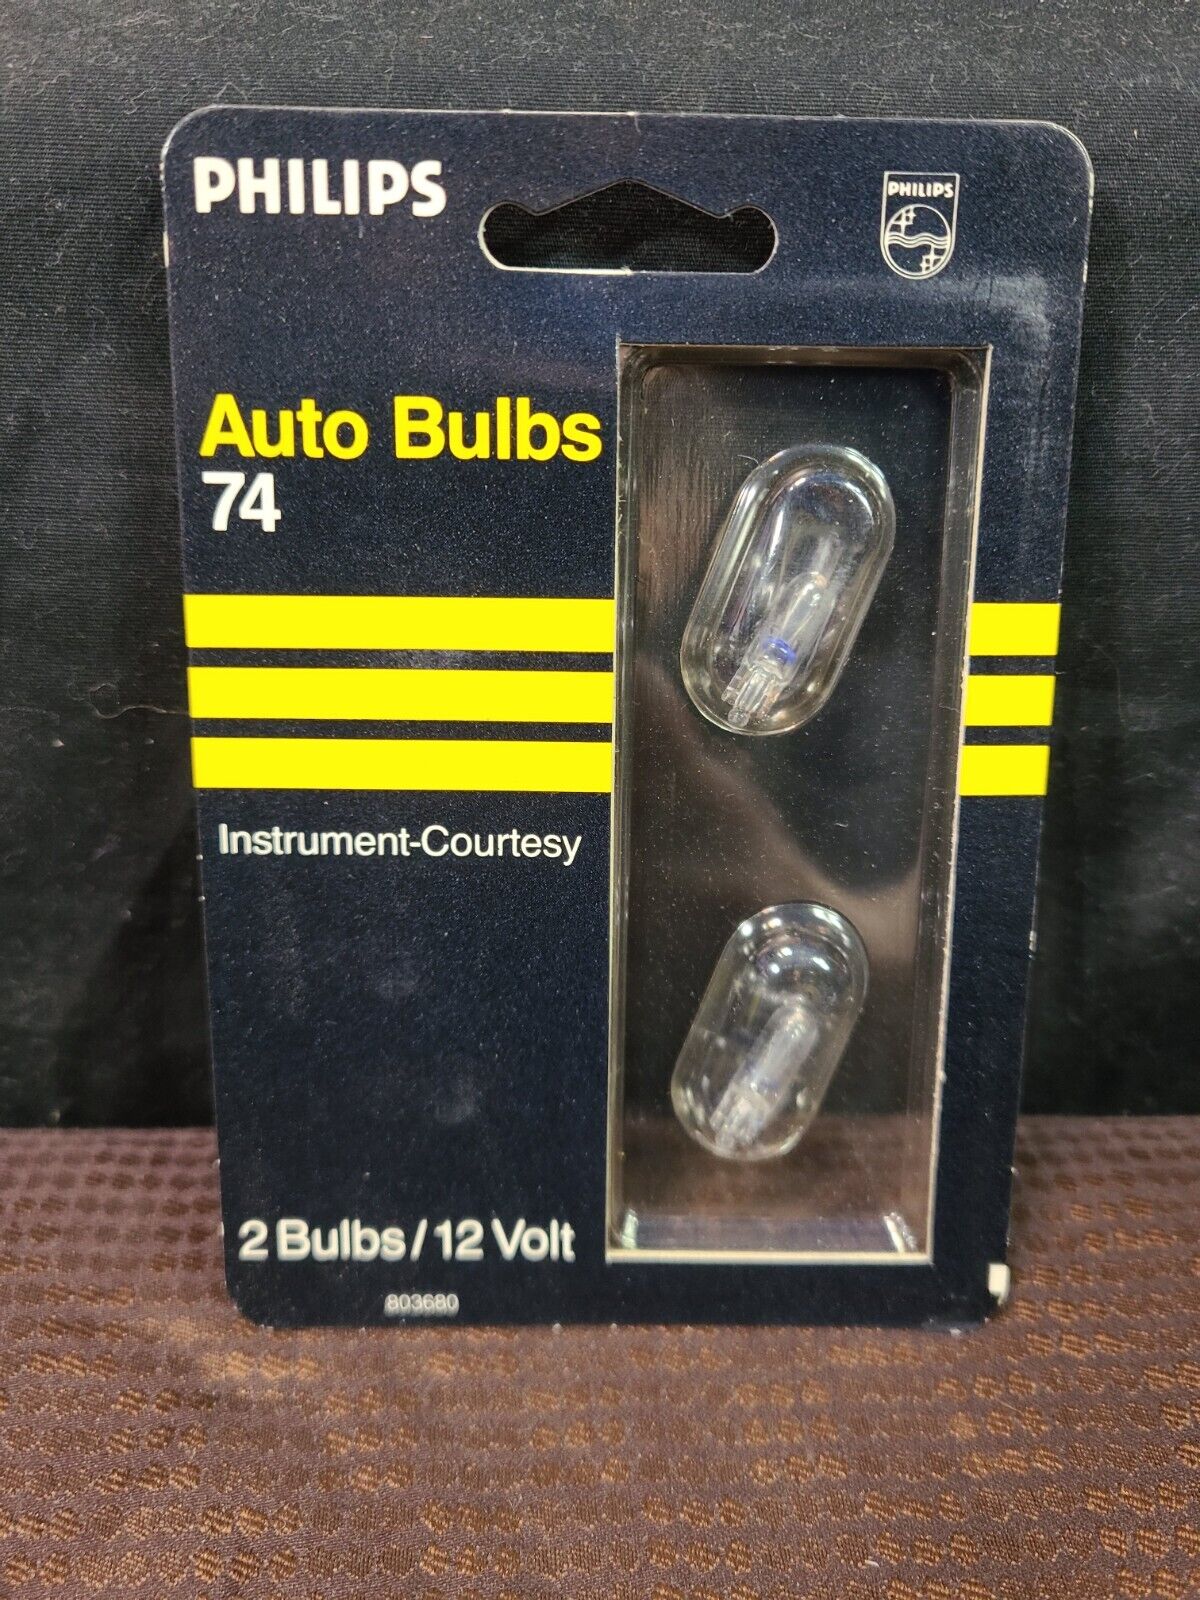 Philips Auto Bulbs 74 Instrument-Courtesy 2 Bulbs 12 Volt 1.4W (NEW) 